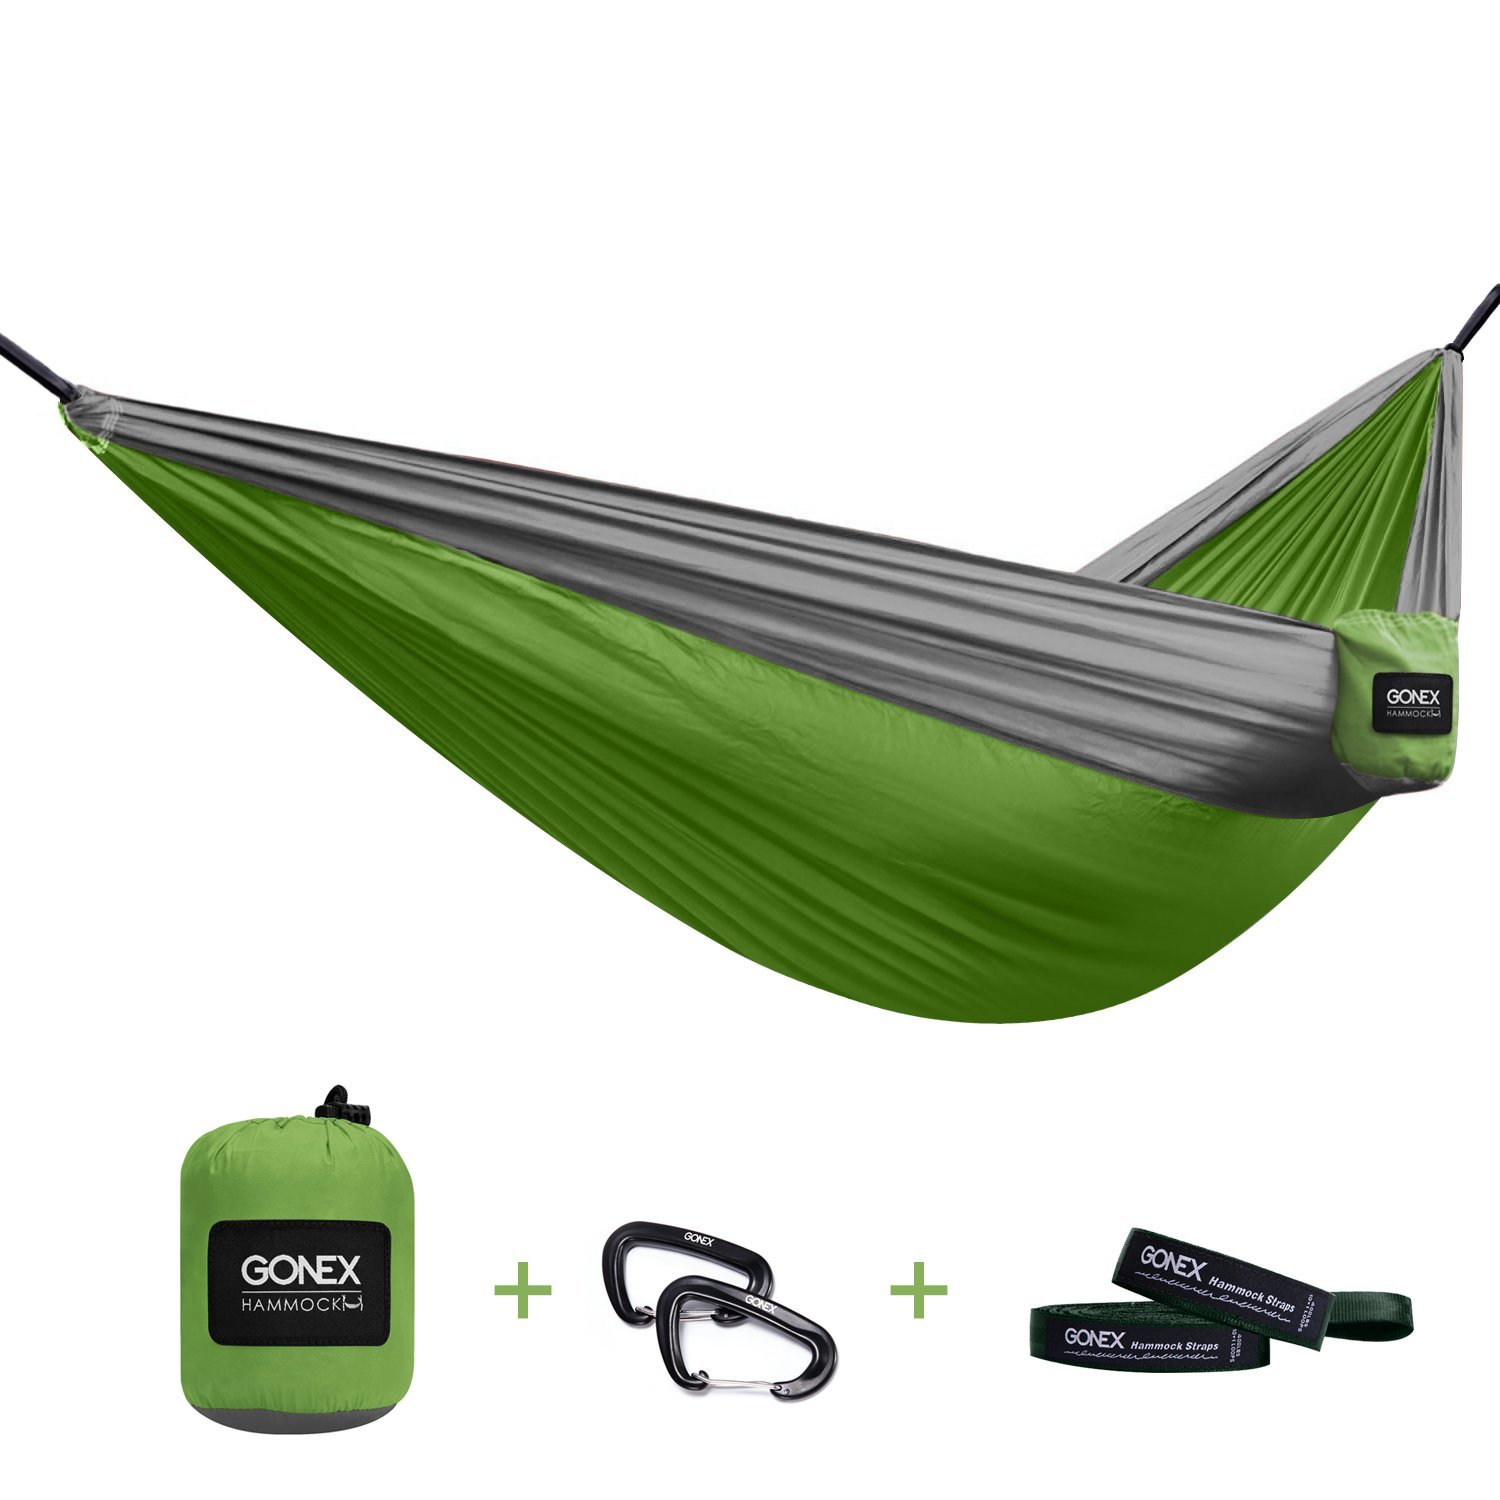 Ultralight Gonex Portable Camping Hammock – Just $18.89!